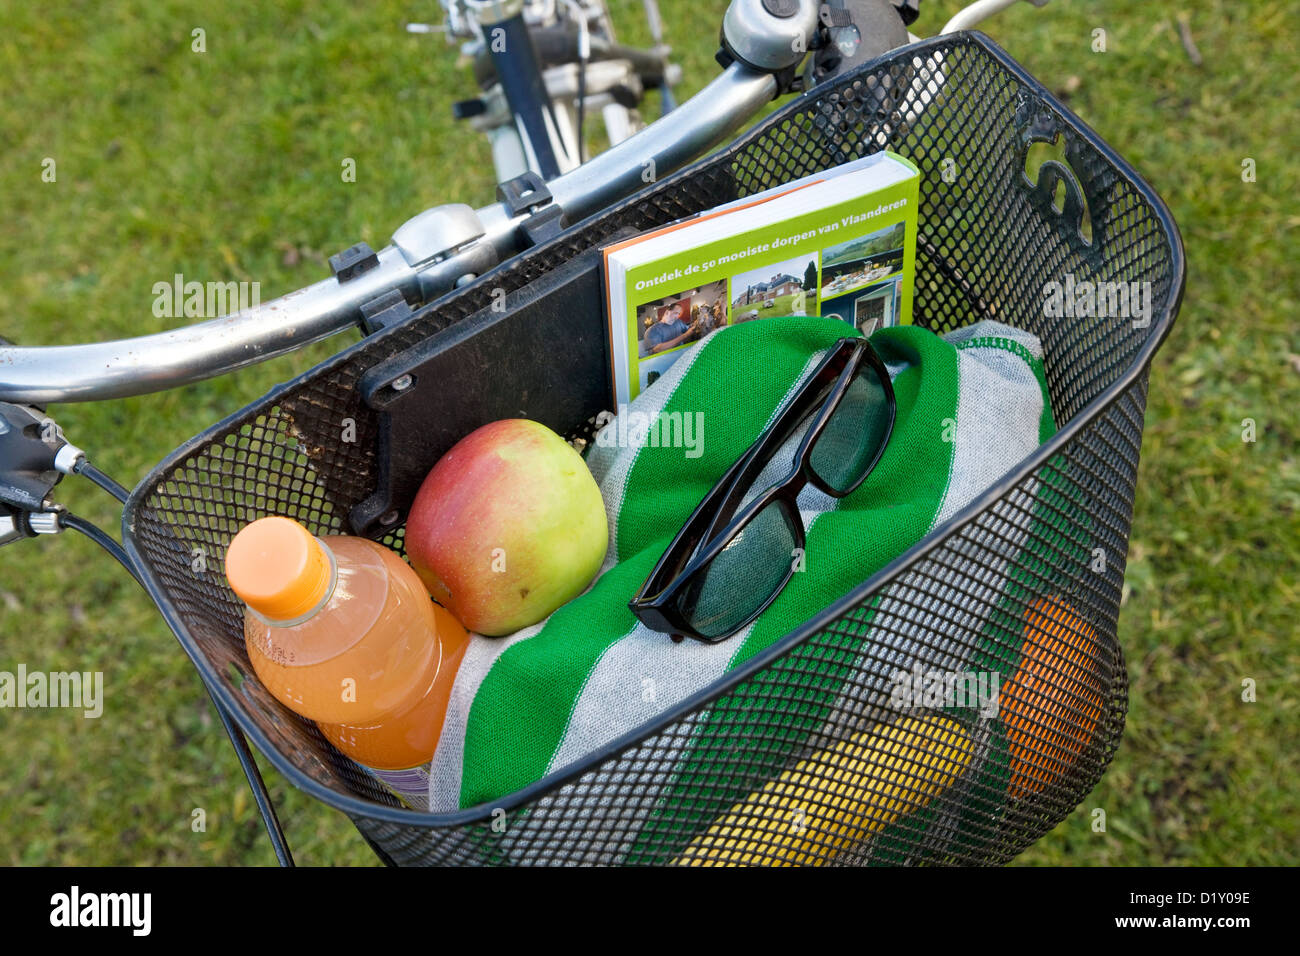 Location de vélo avec panier pique-nique rempli de marchandises et de vacances pendant les vacances d'été Banque D'Images